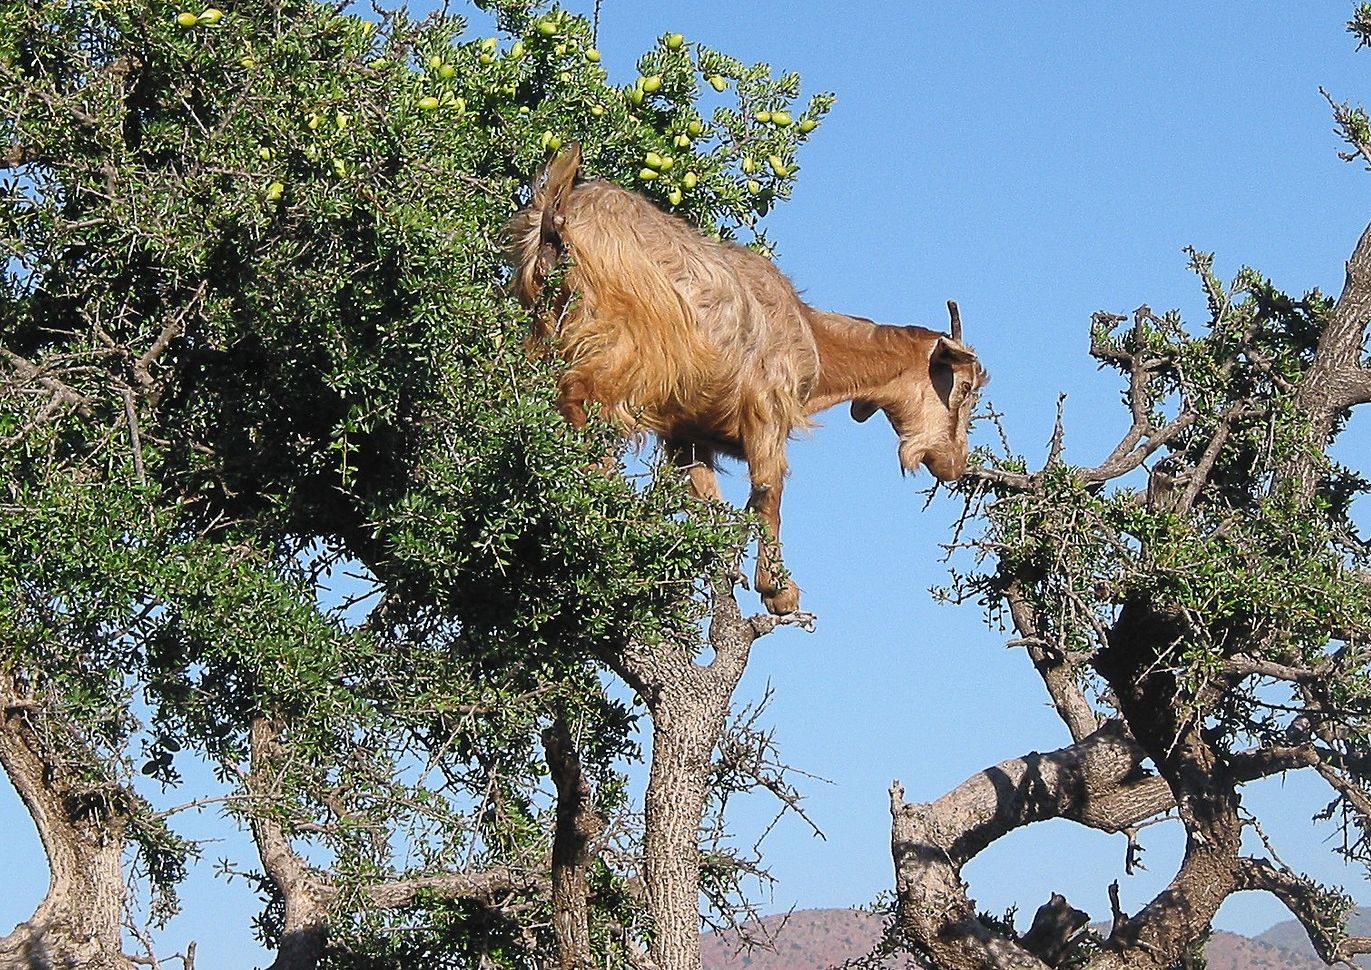 Tree goats in an Argan tree